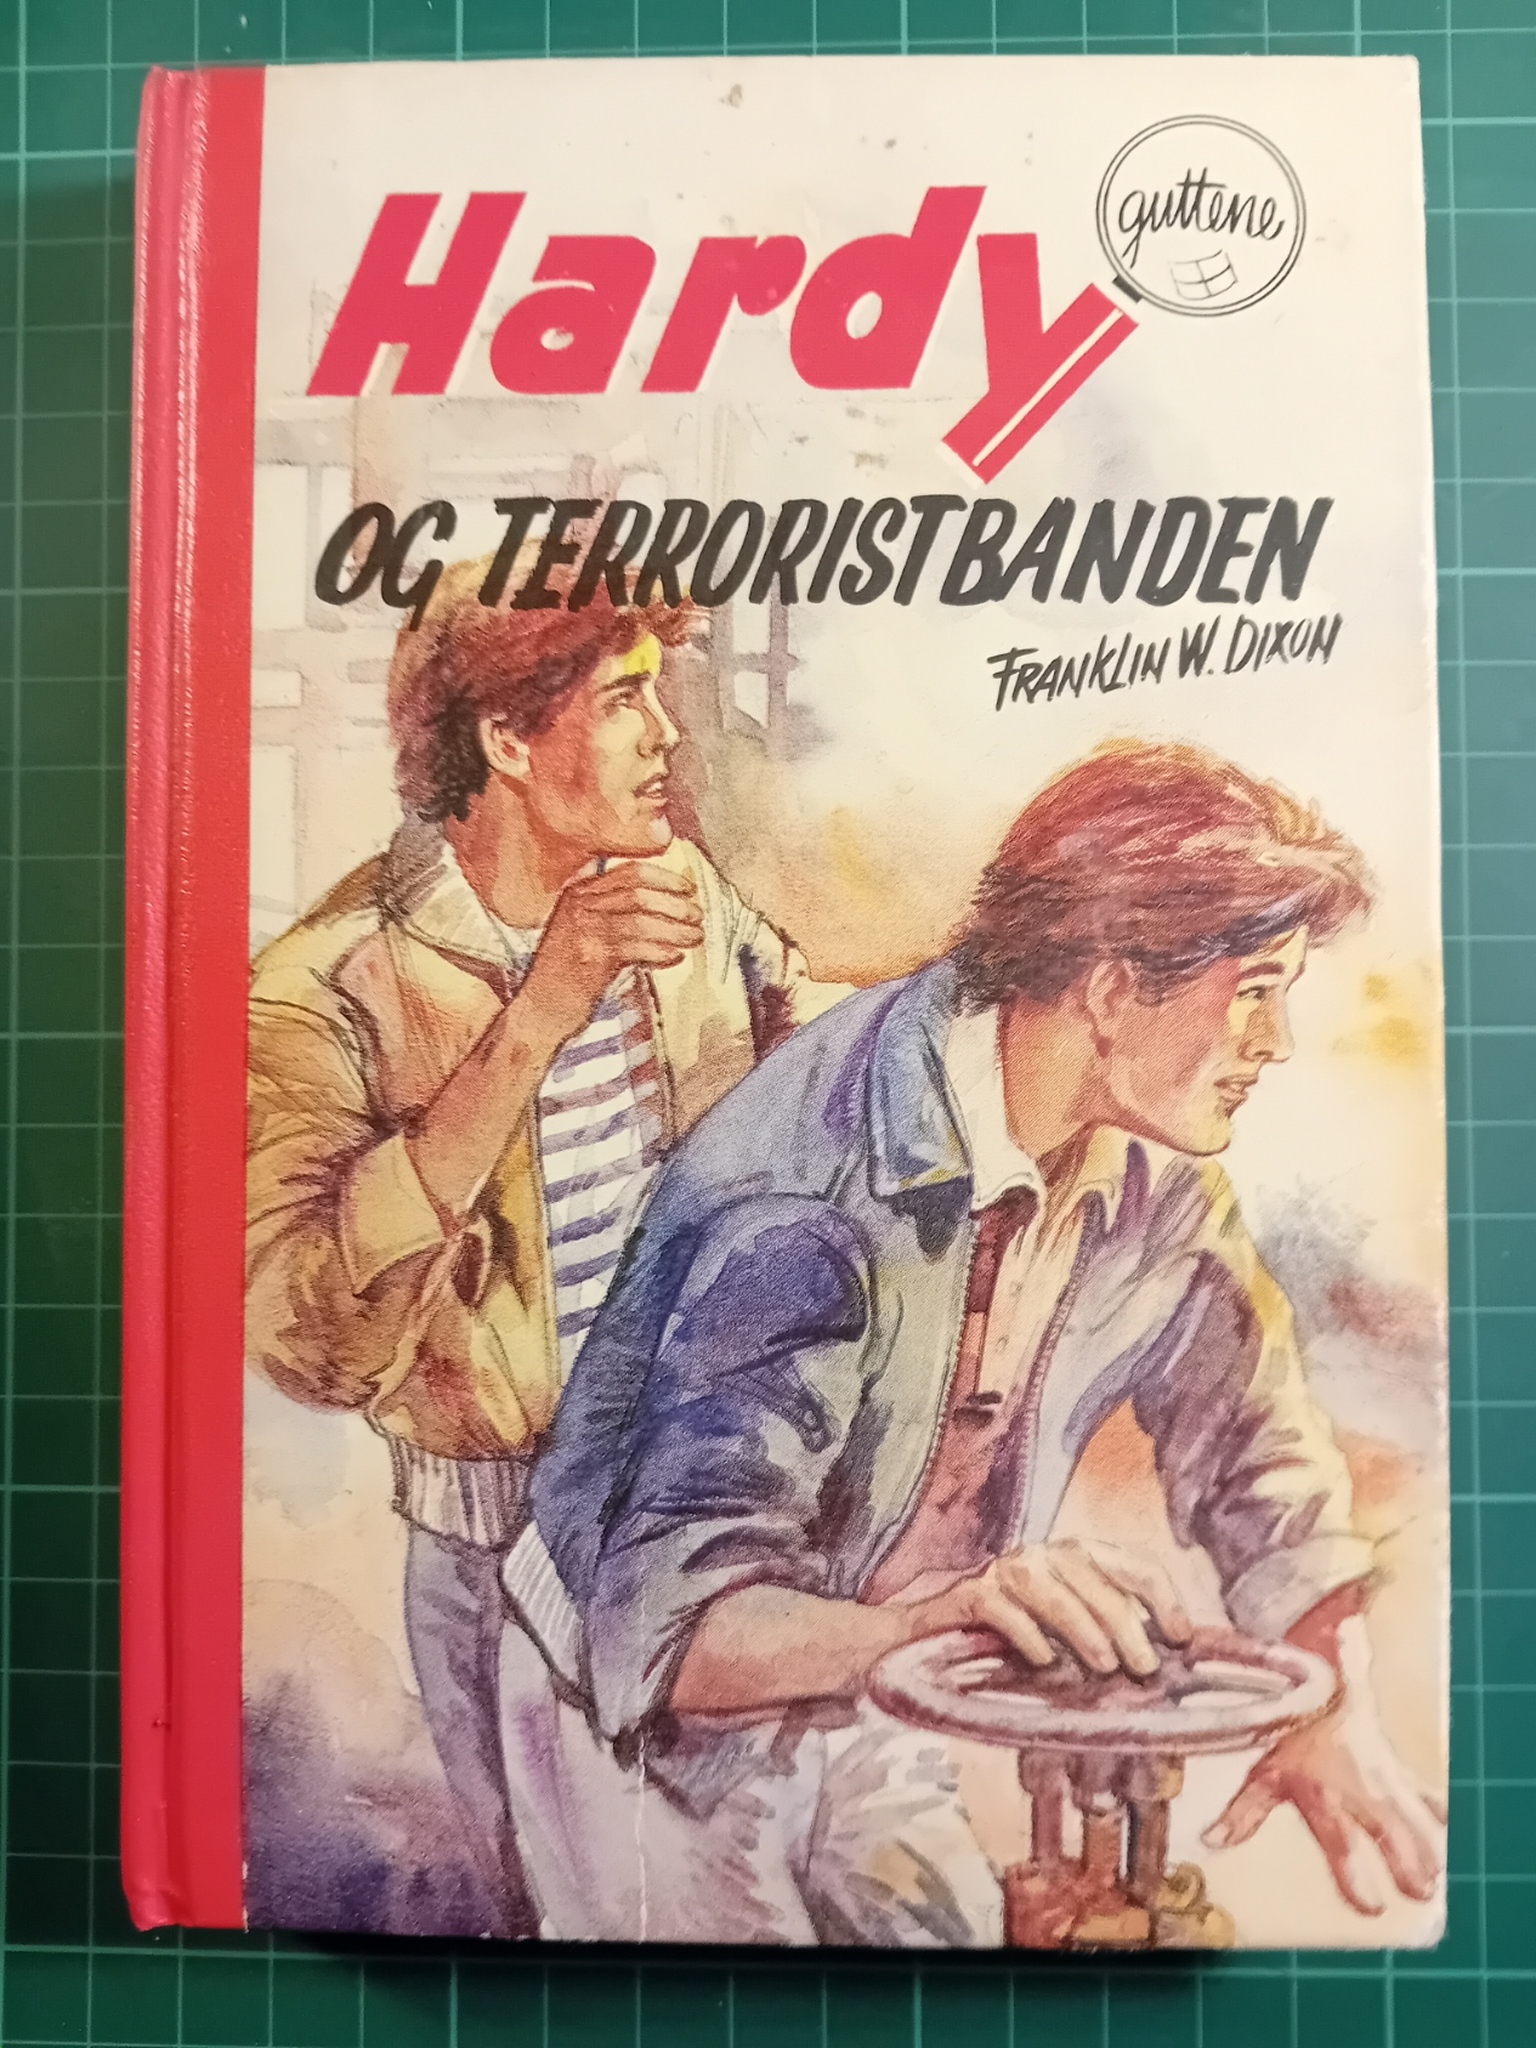 082: Hardy-guttene og terroristbanden